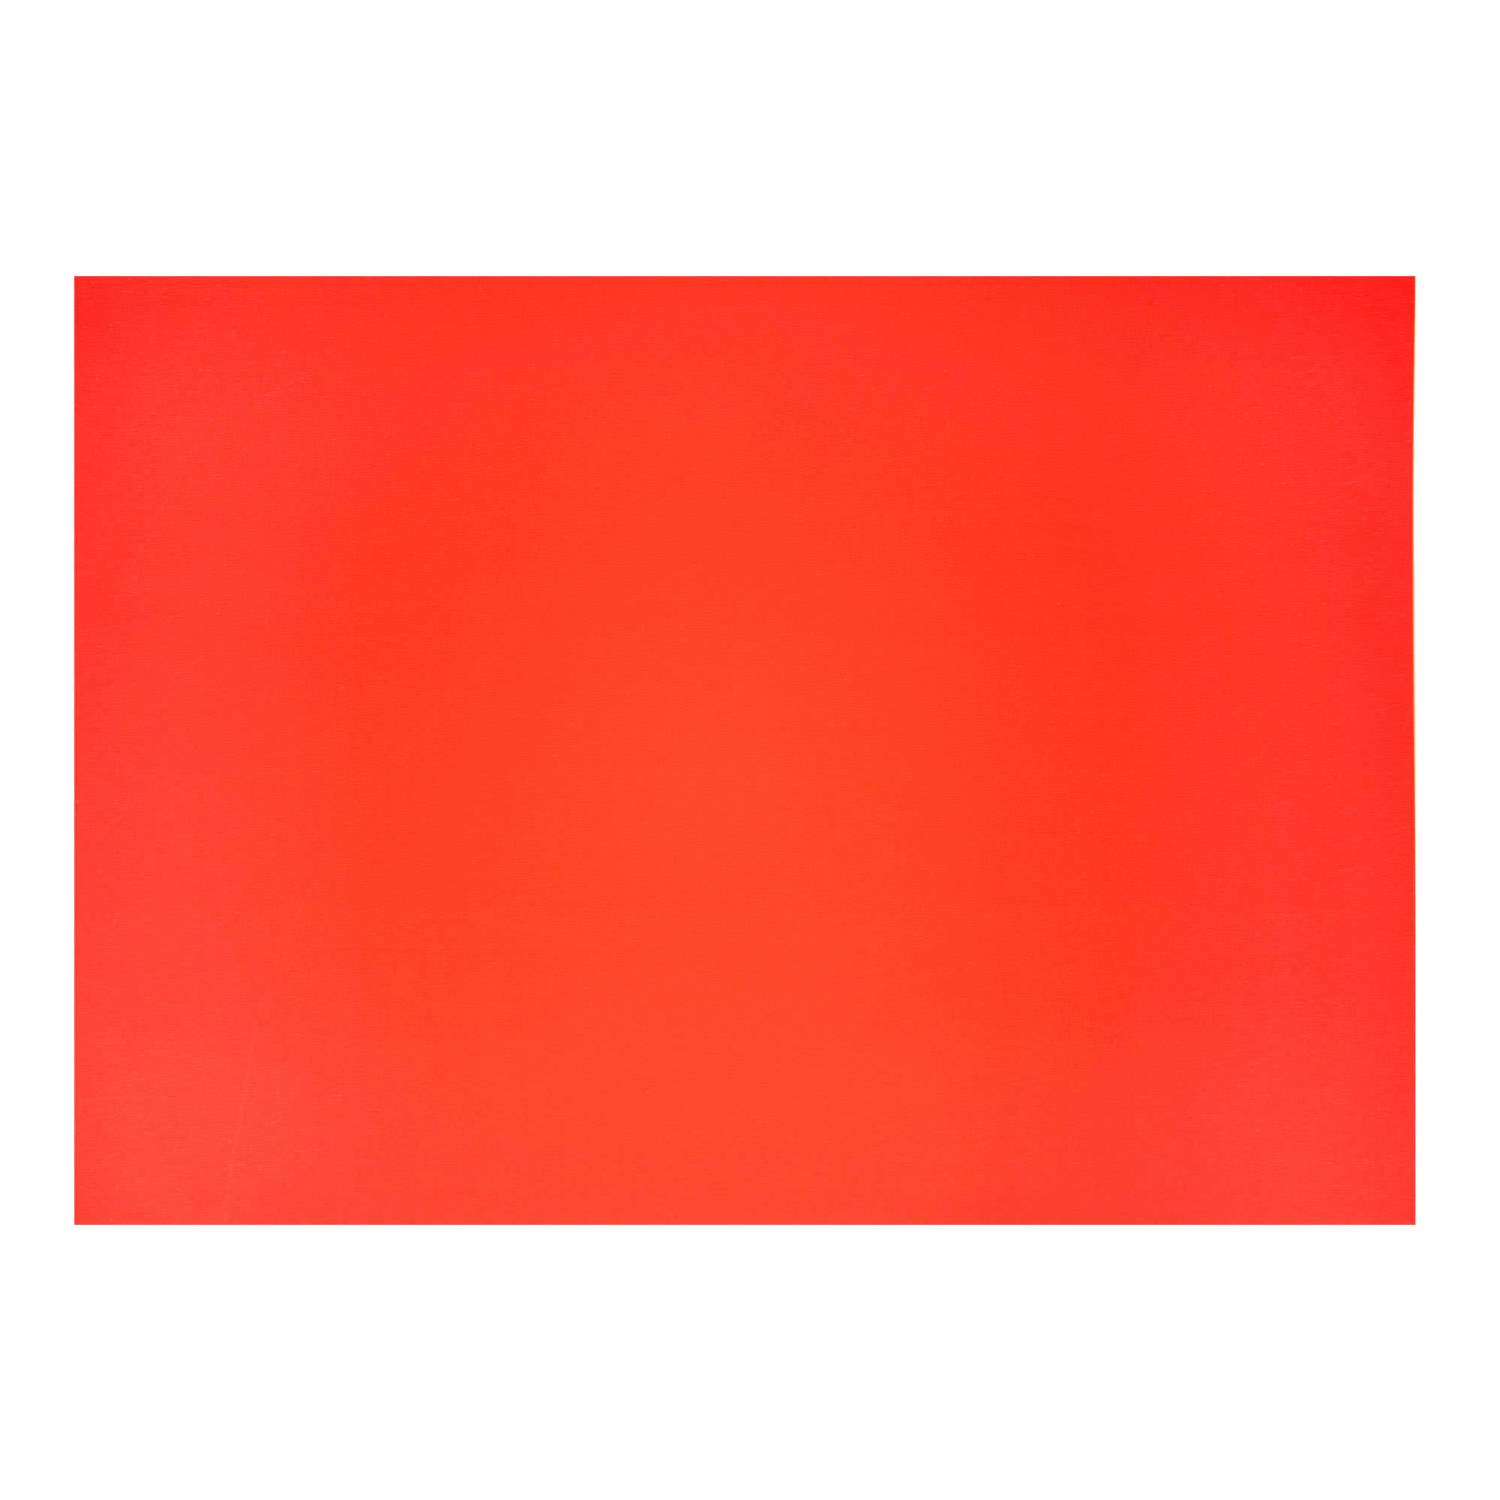 30 Pfeile in 3 Größen Neon rote Preisschild aus Karton Werbung deko Schaufenster 